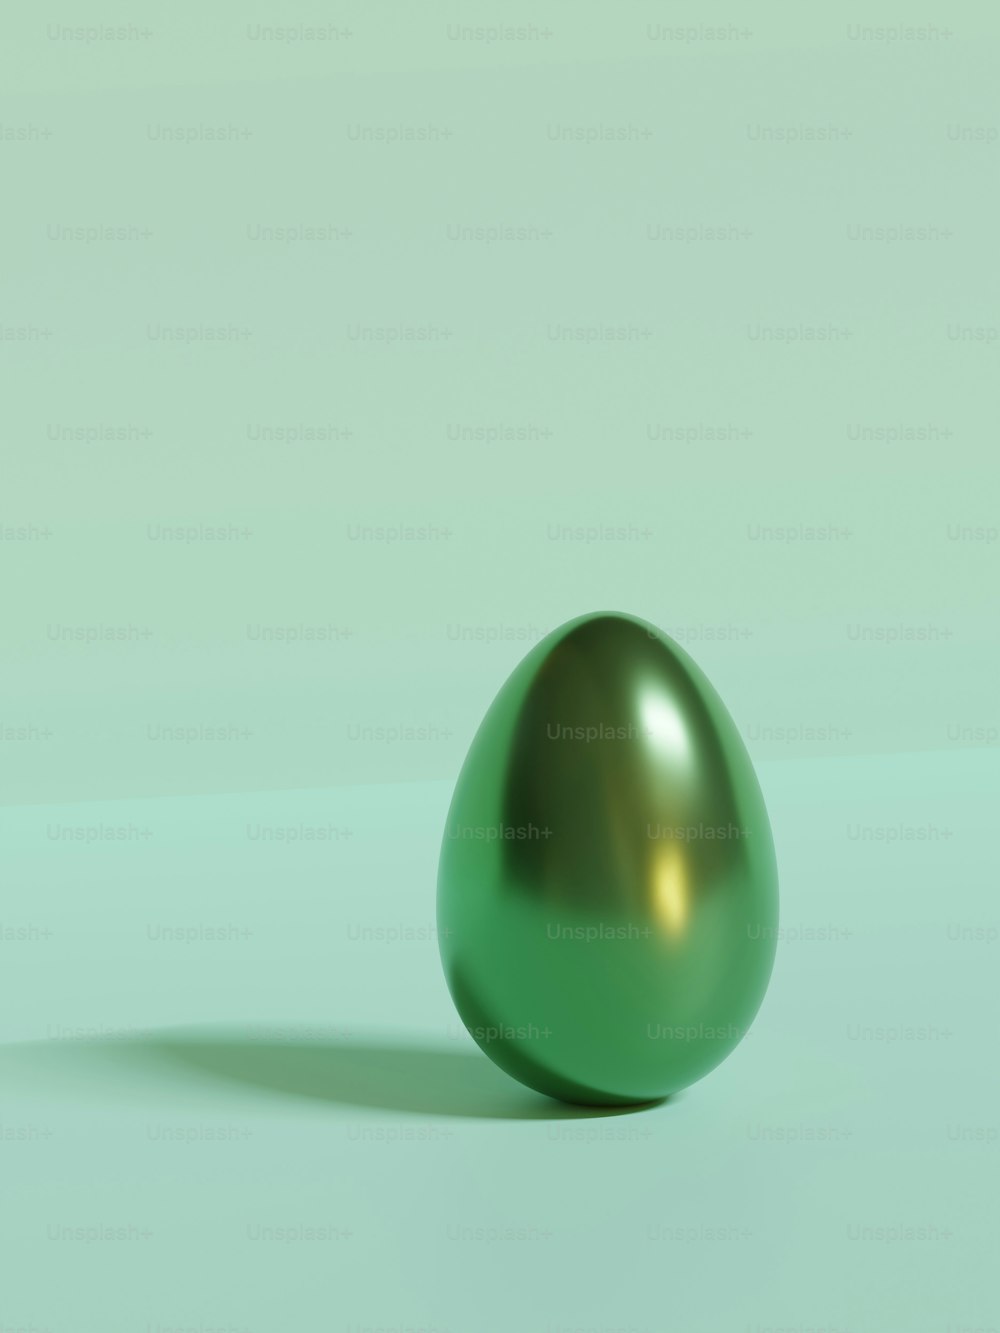 Un œuf vert brillant sur fond vert pâle